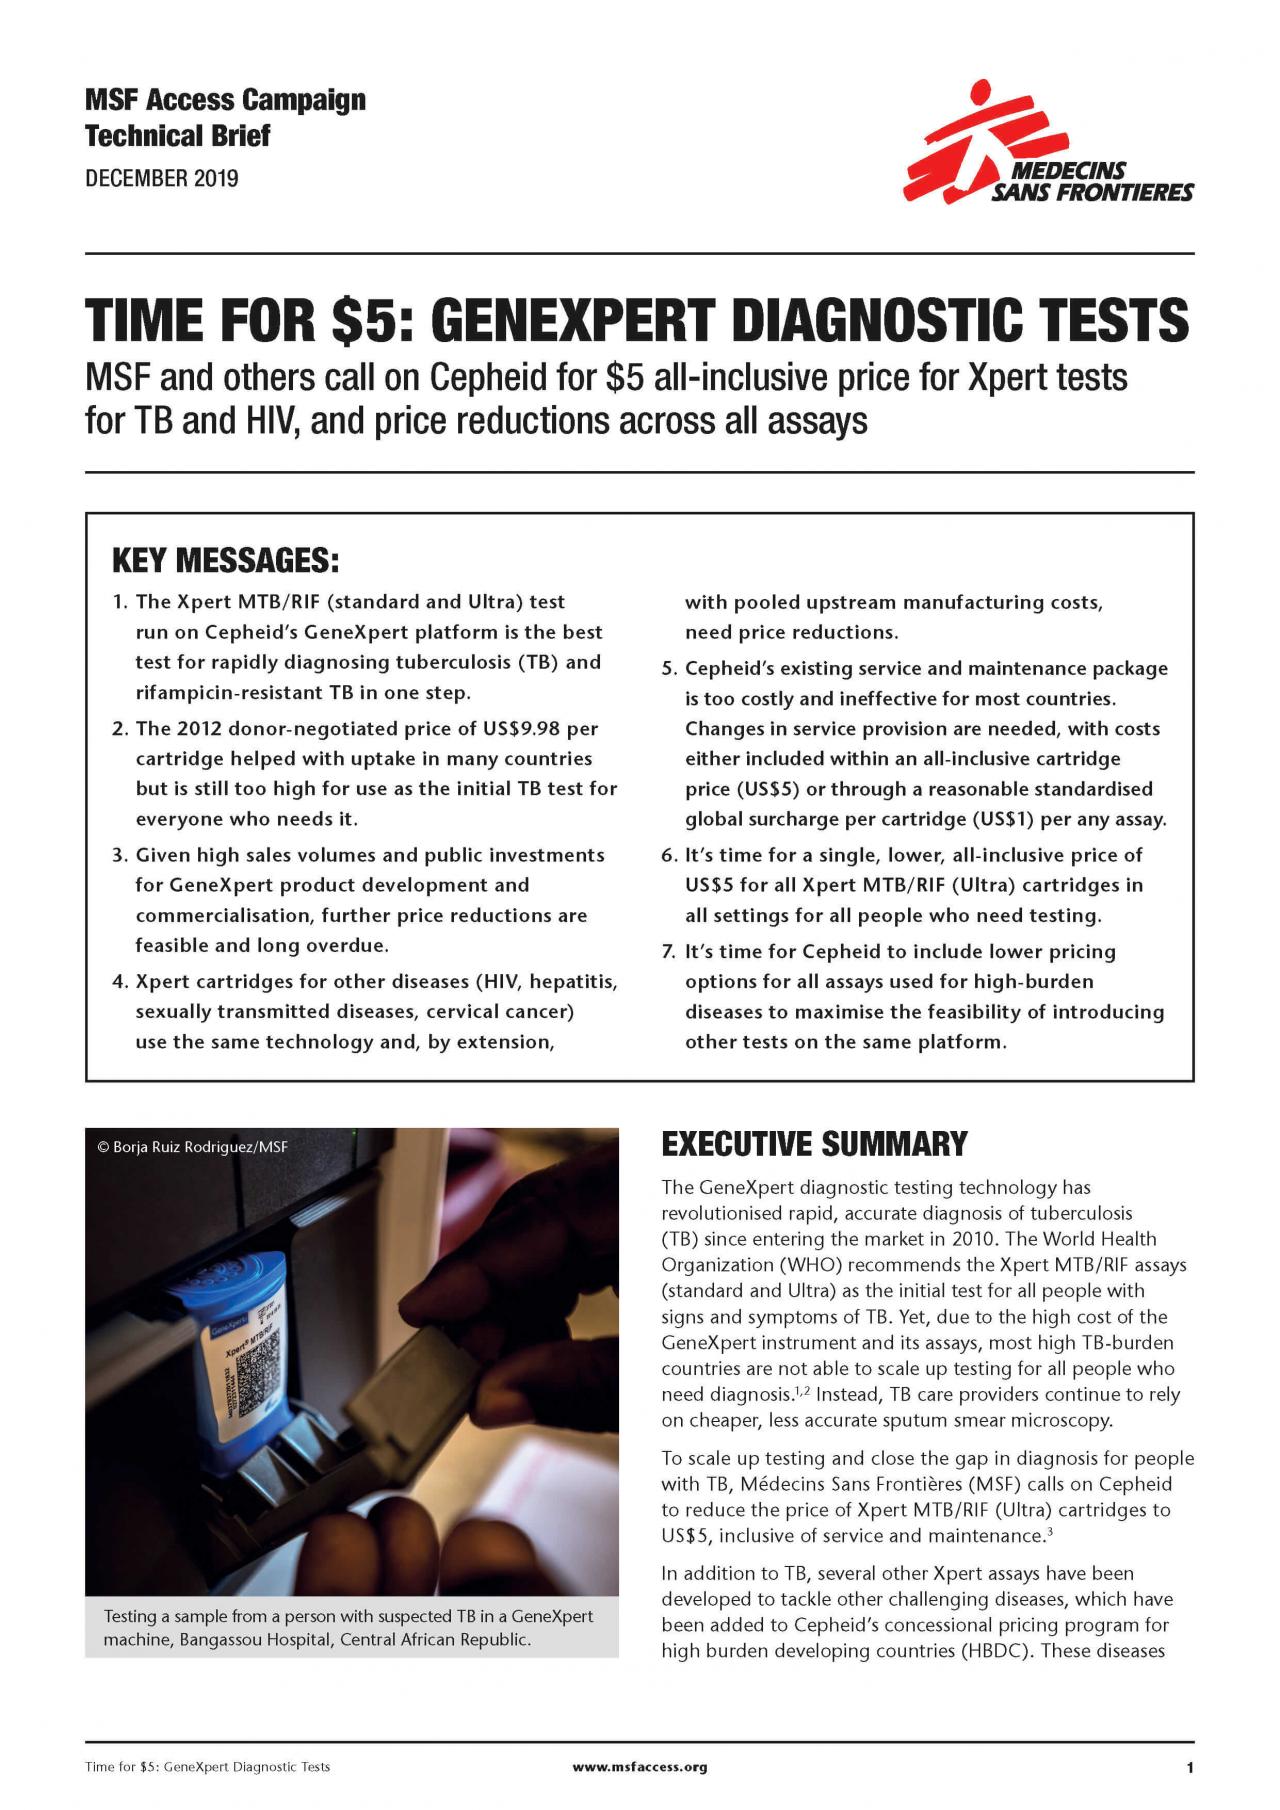 Genexpert Diagnostic Tests